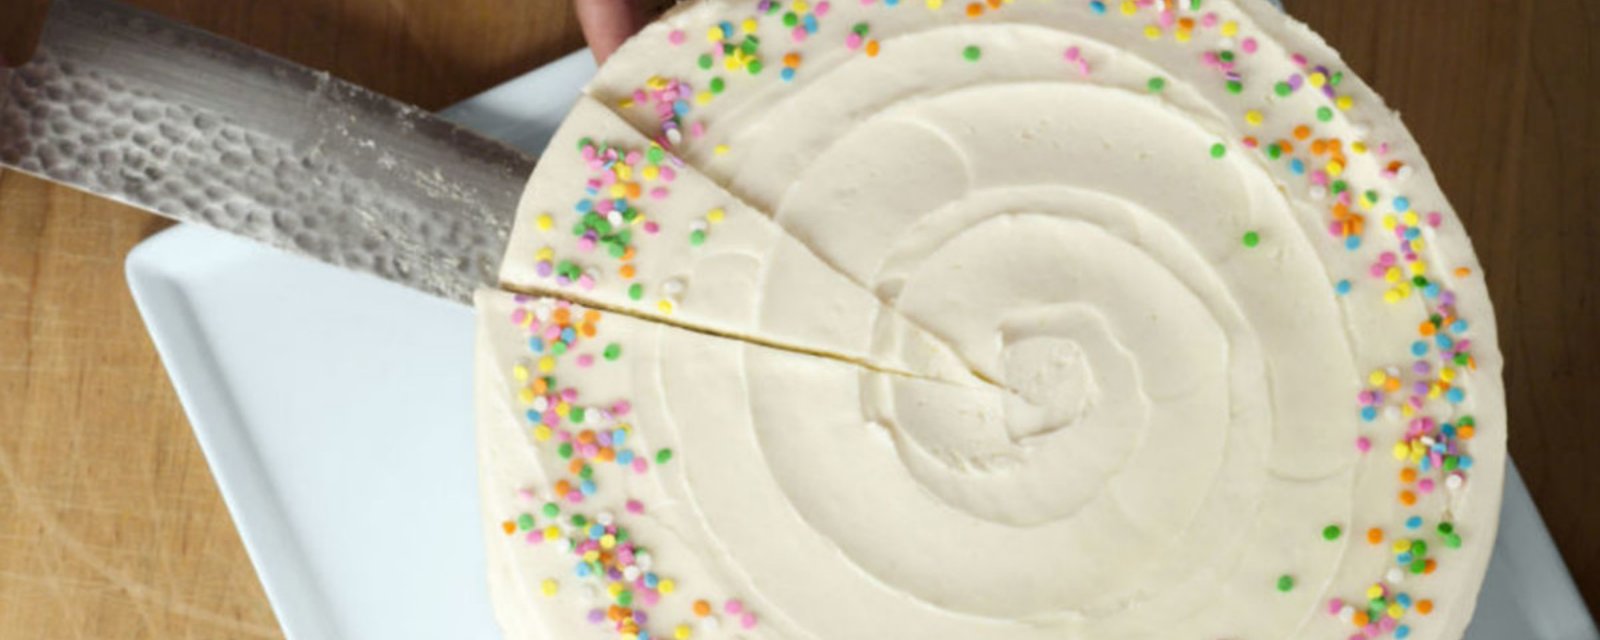 Ne coupez plus vos gâteaux ronds en pointes. Voici la bonne méthode à suivre